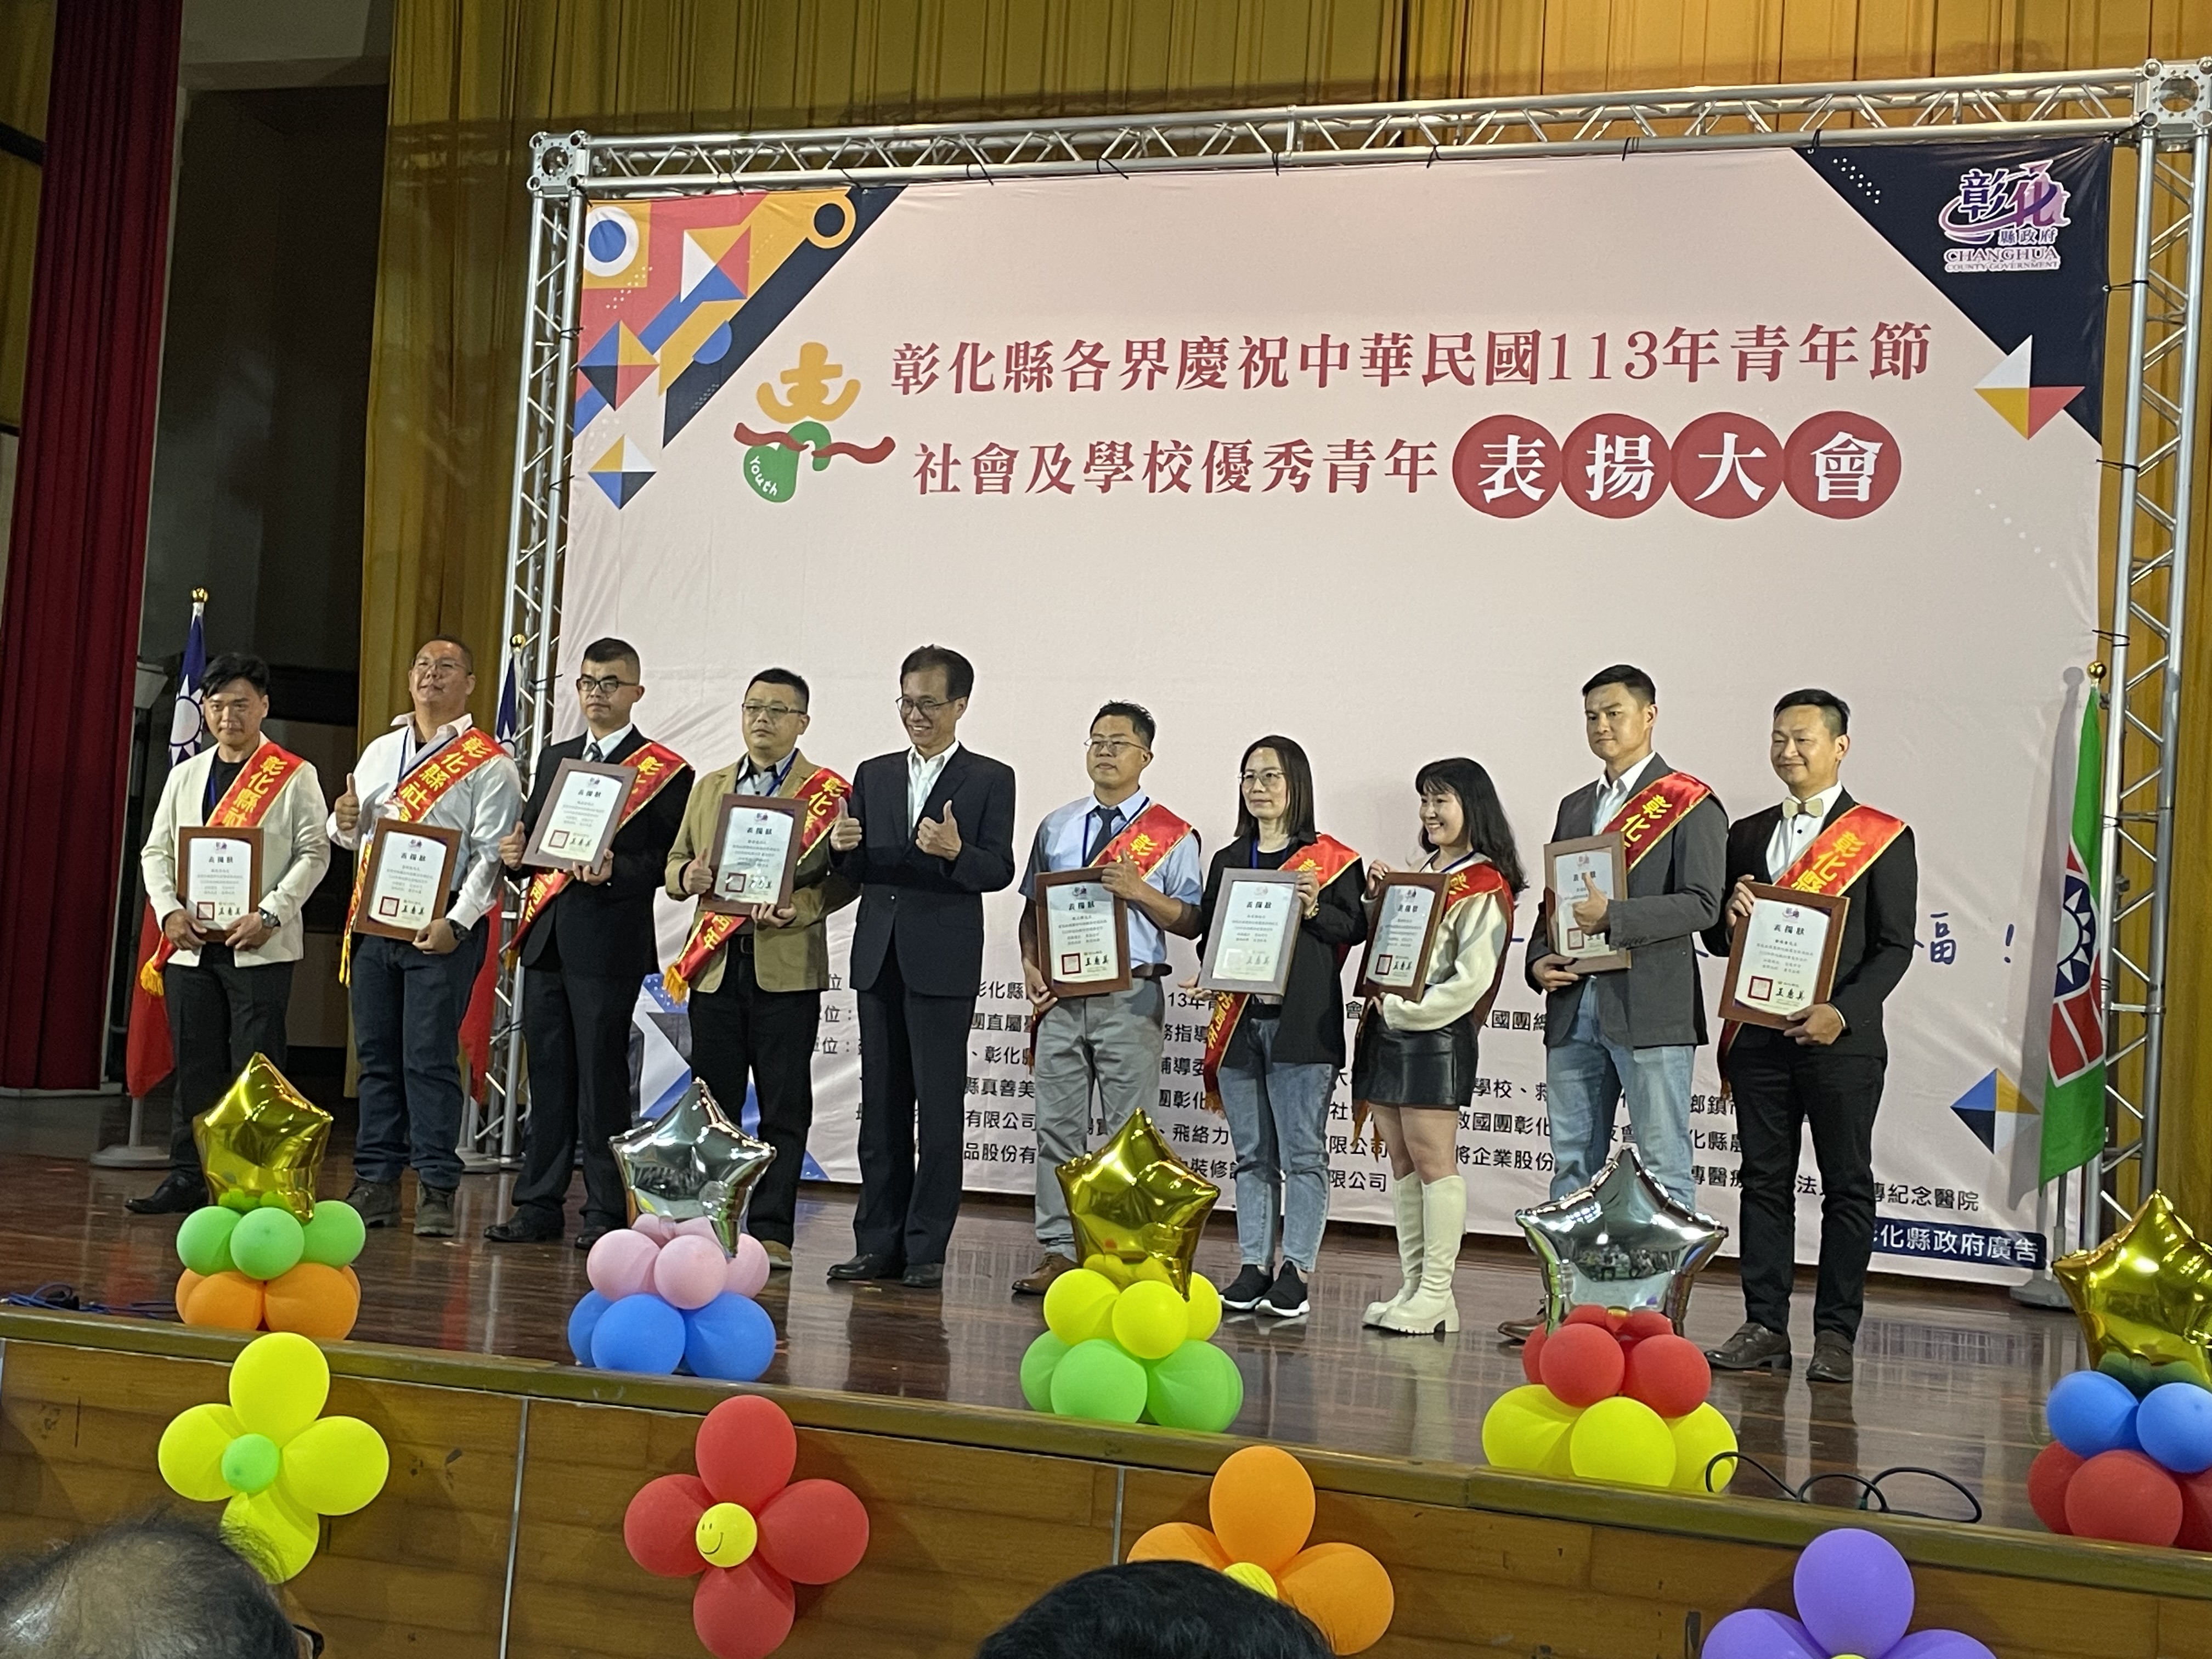 楊宏達課員榮獲「113年彰化縣社會優秀青年」殊榮，